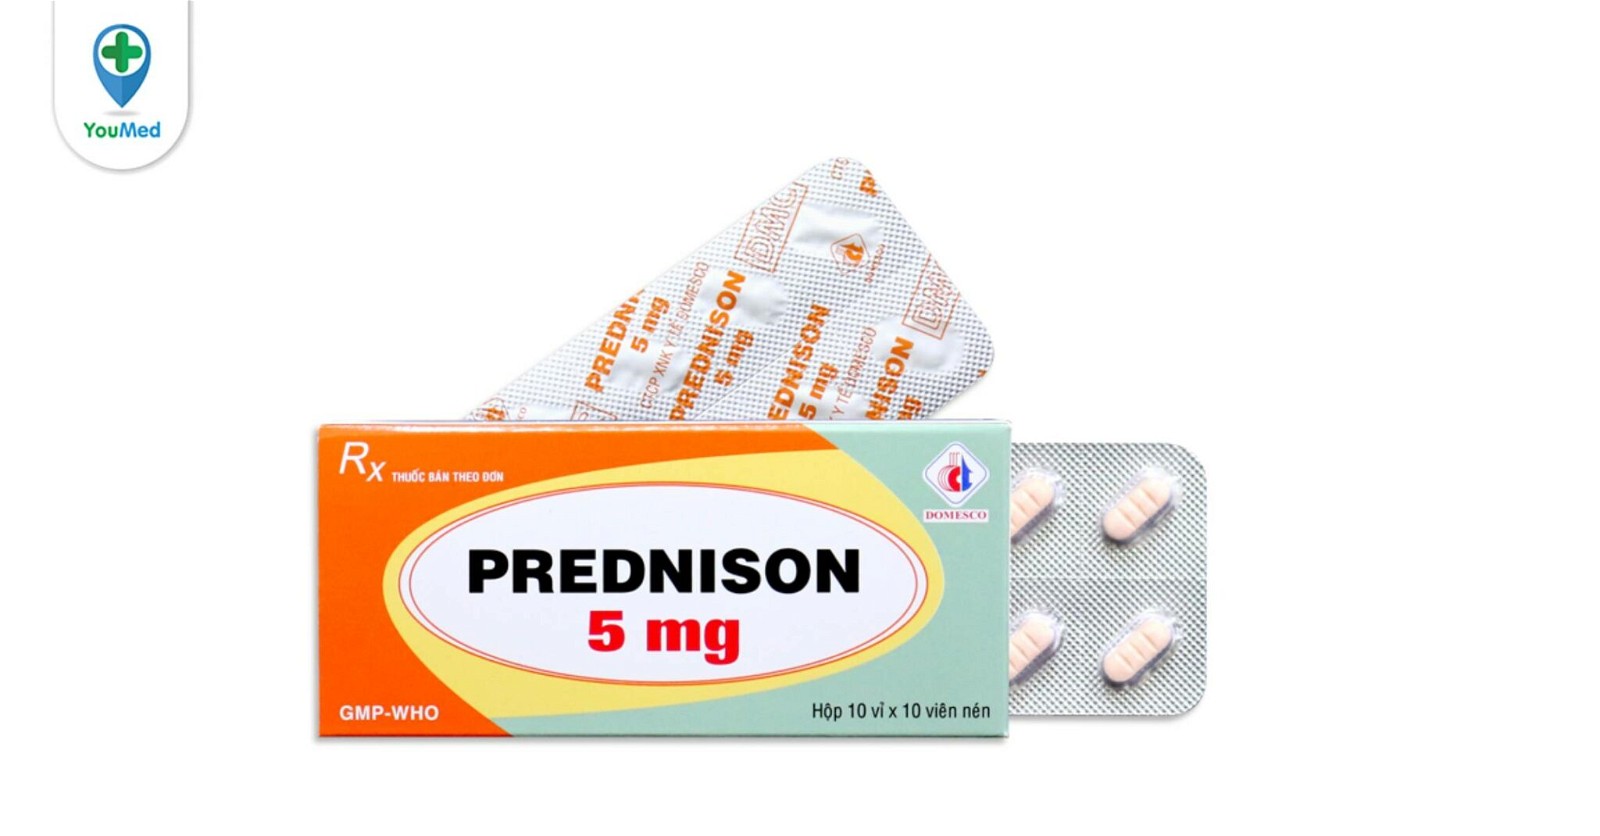 Giải đáp thắc mắc: prednison 5mg là thuốc gì và công dụng của nó